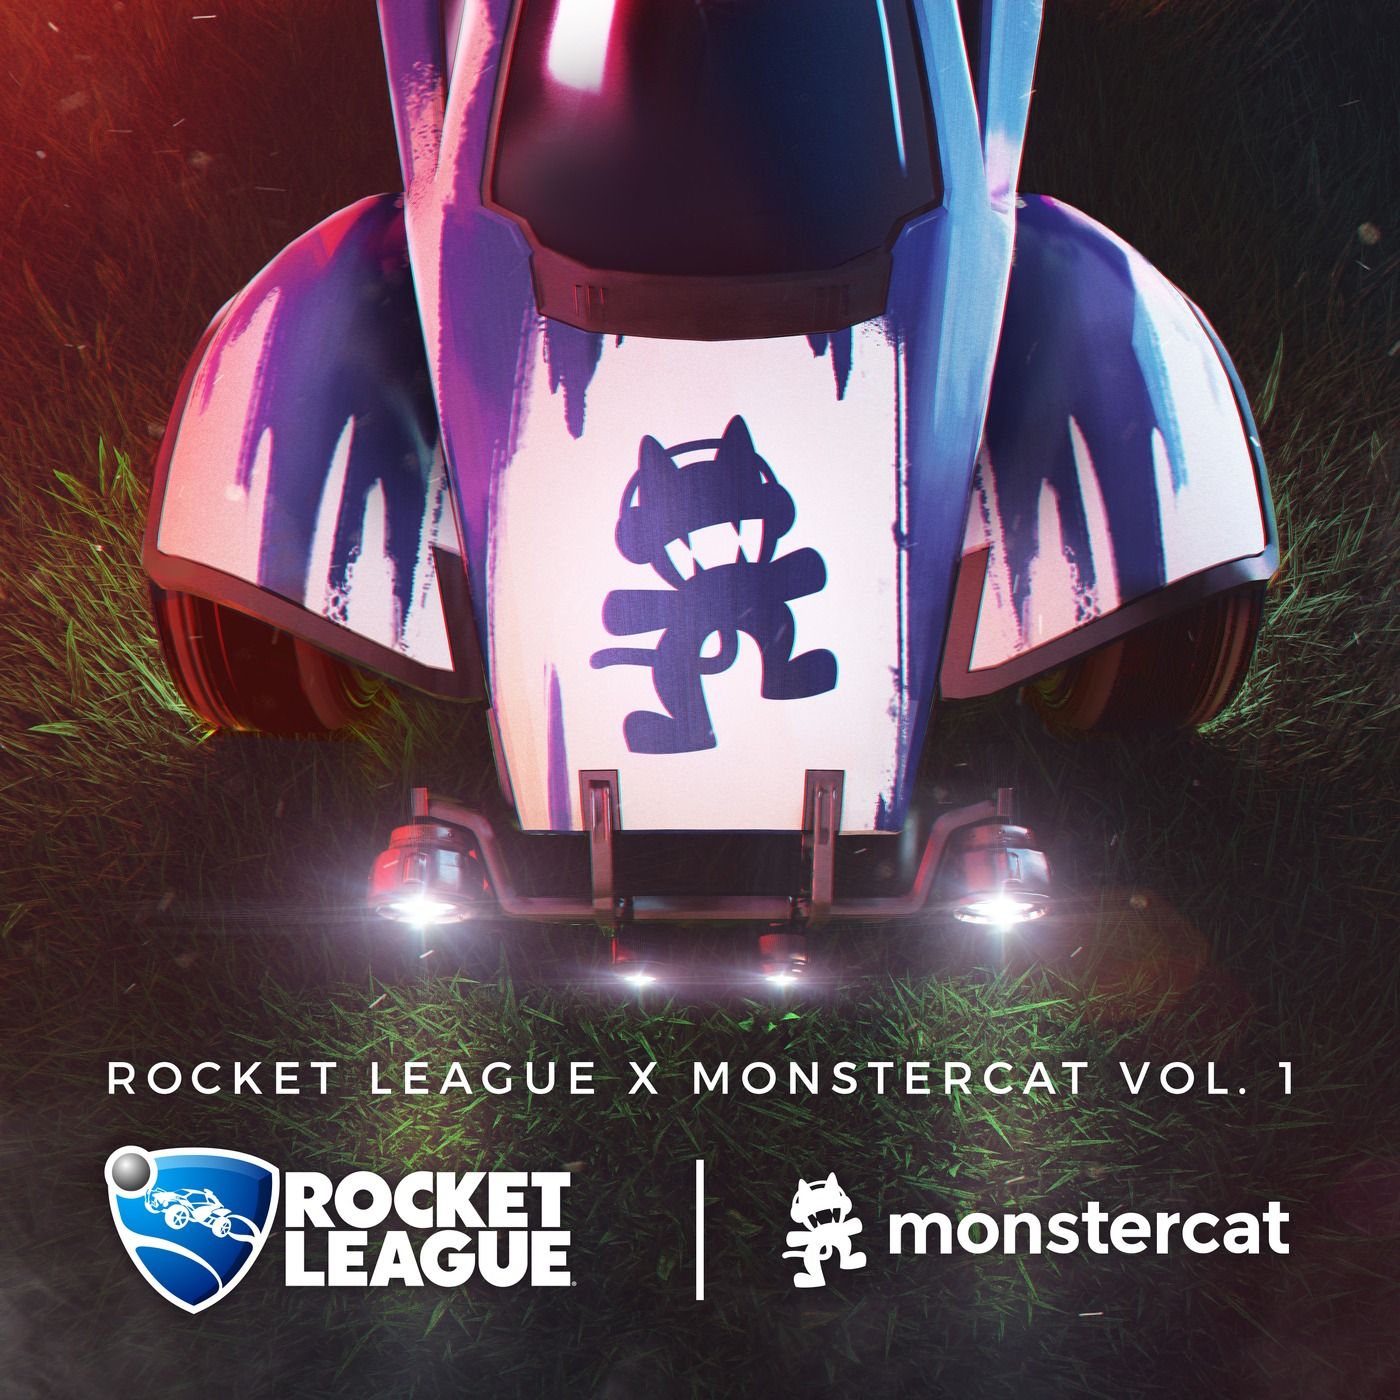 WRLD - Drift Away [Monstercat Release] (신비, 비트, 격렬, 게임, OST)